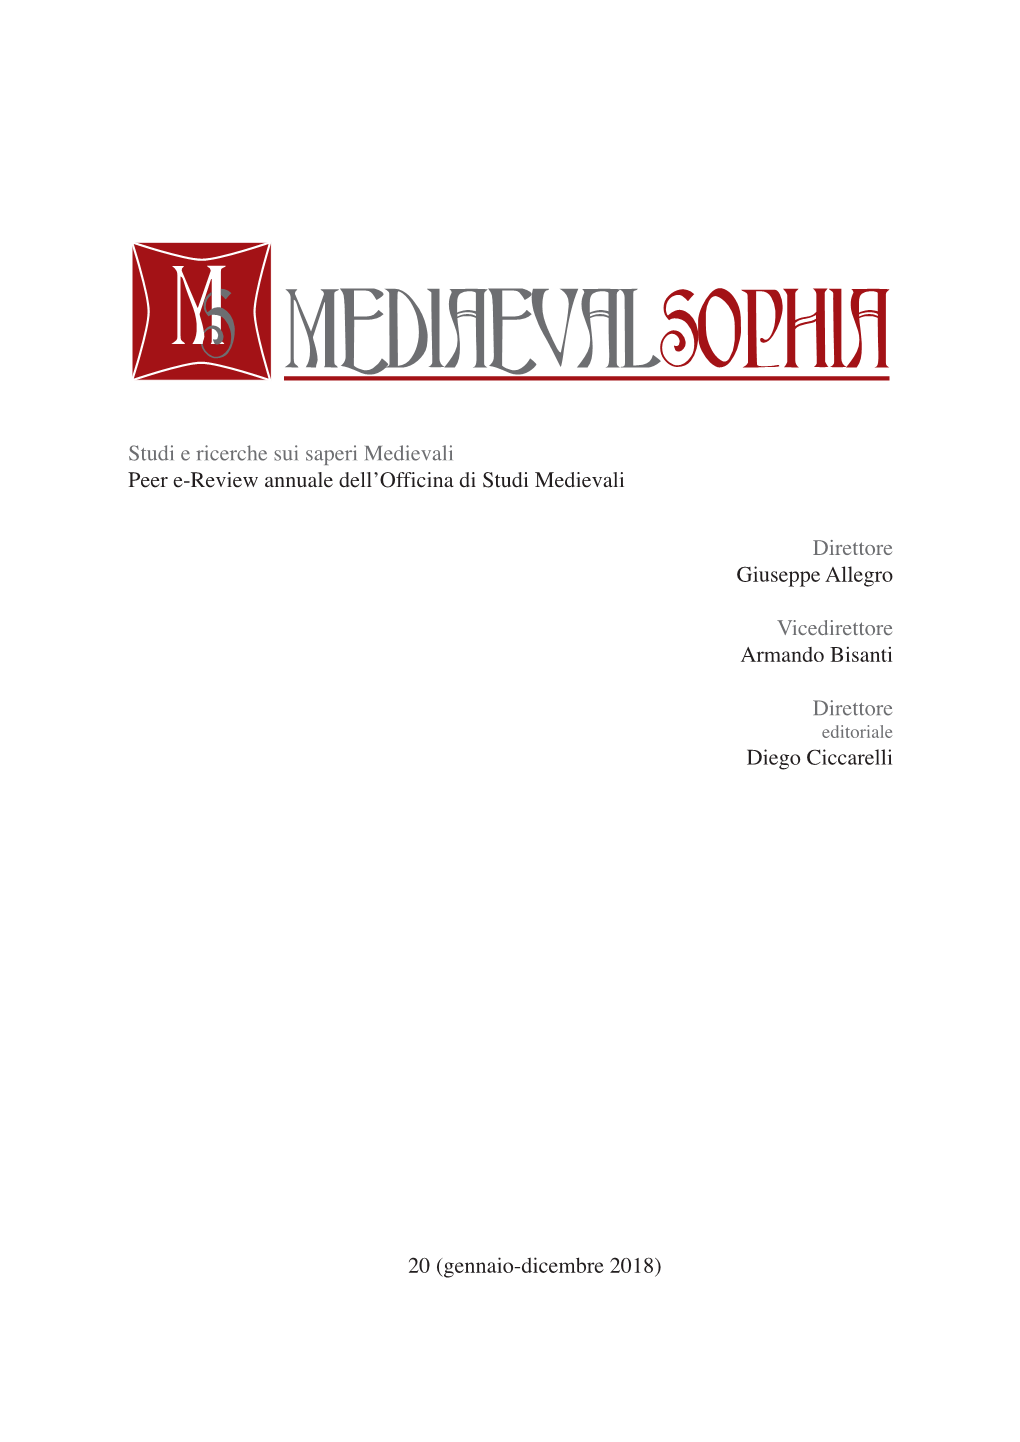 Peer E-Review Annuale Dell'officina Di Studi Medievali